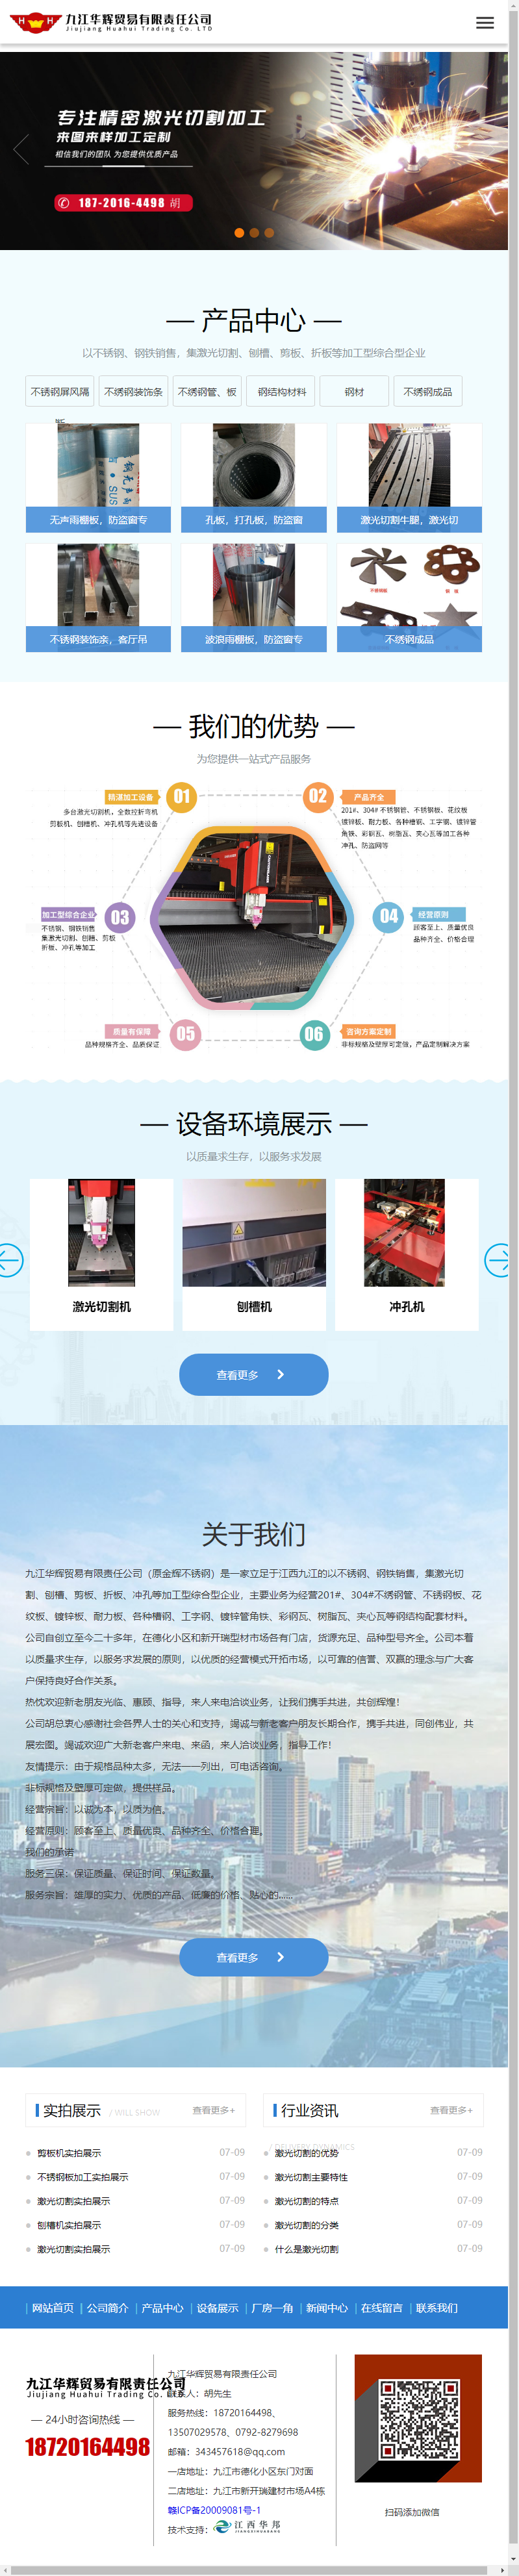 九江华辉贸易有限责任公司网站案例